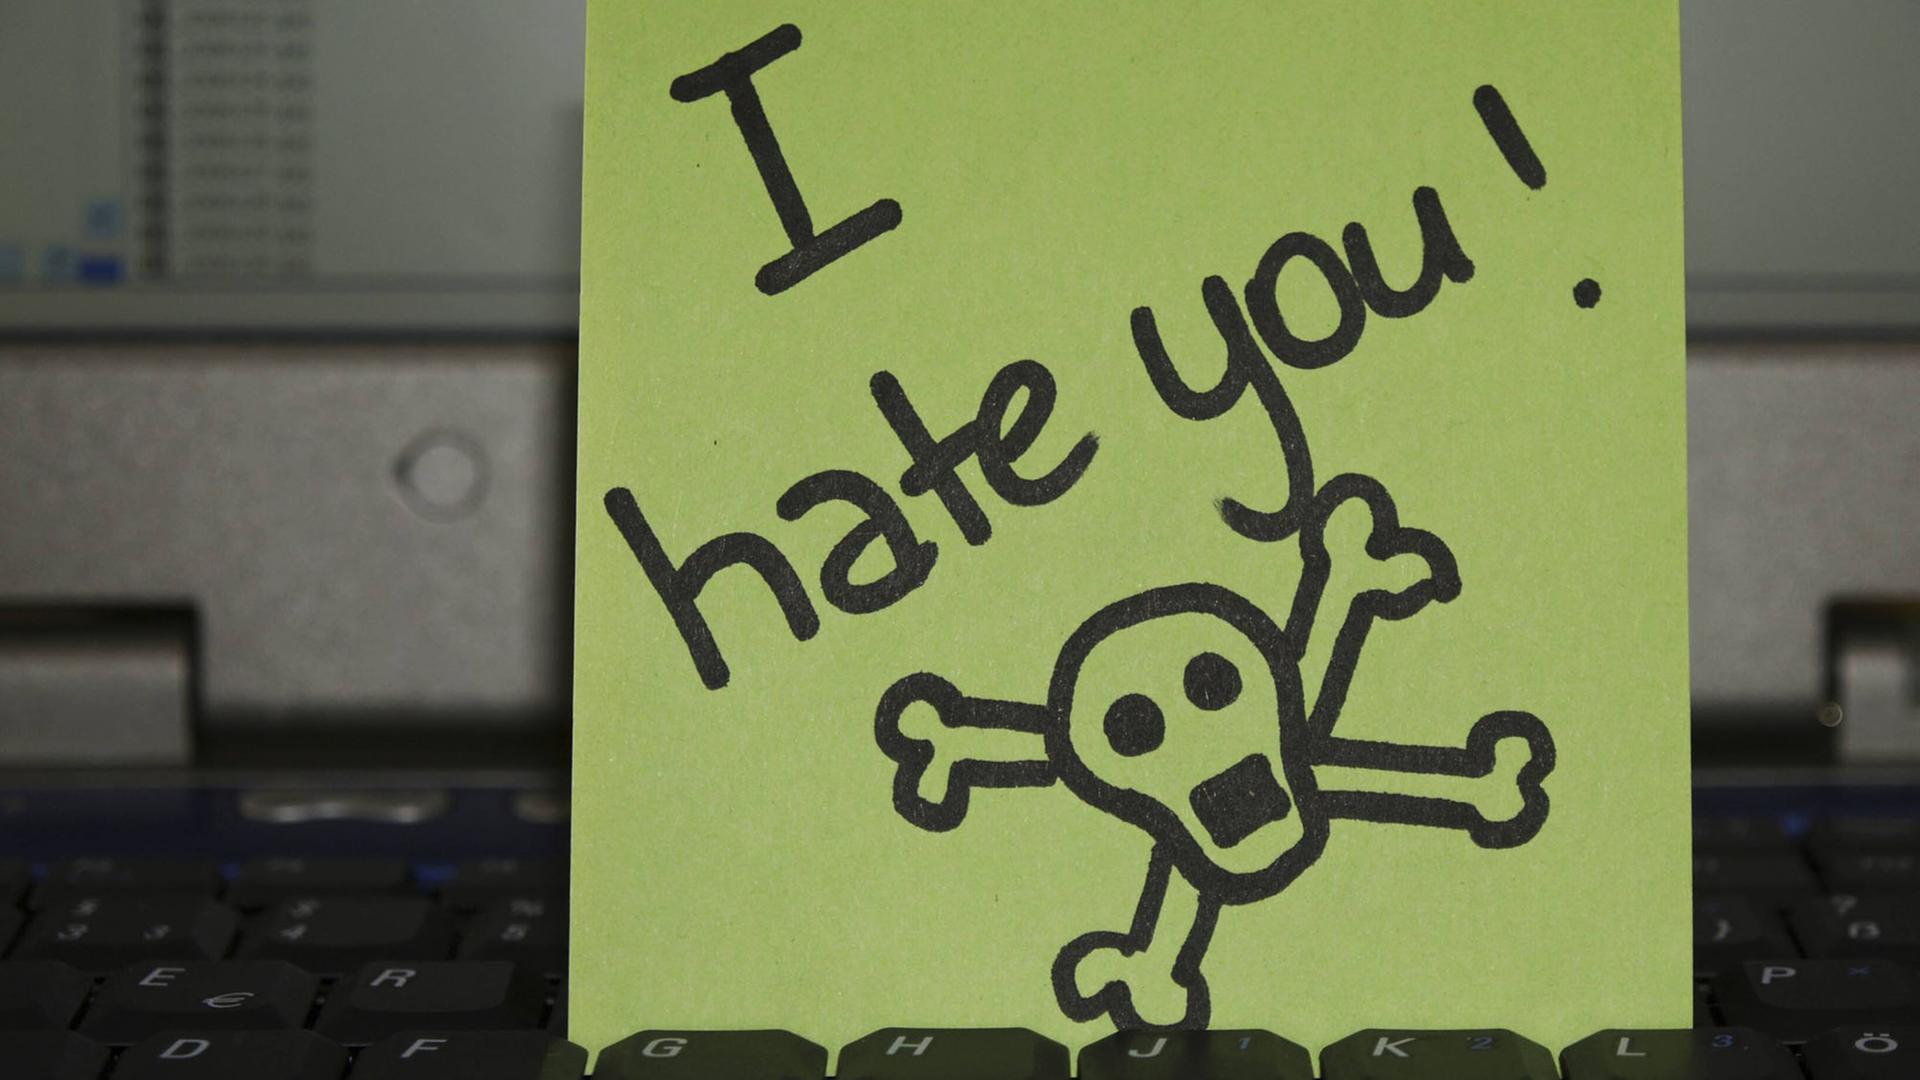 Notizzettel auf Laptop-Tastatur: "I hate you" - Ich hasse dich -, daneben ist ein Totenkopf gezeichnet